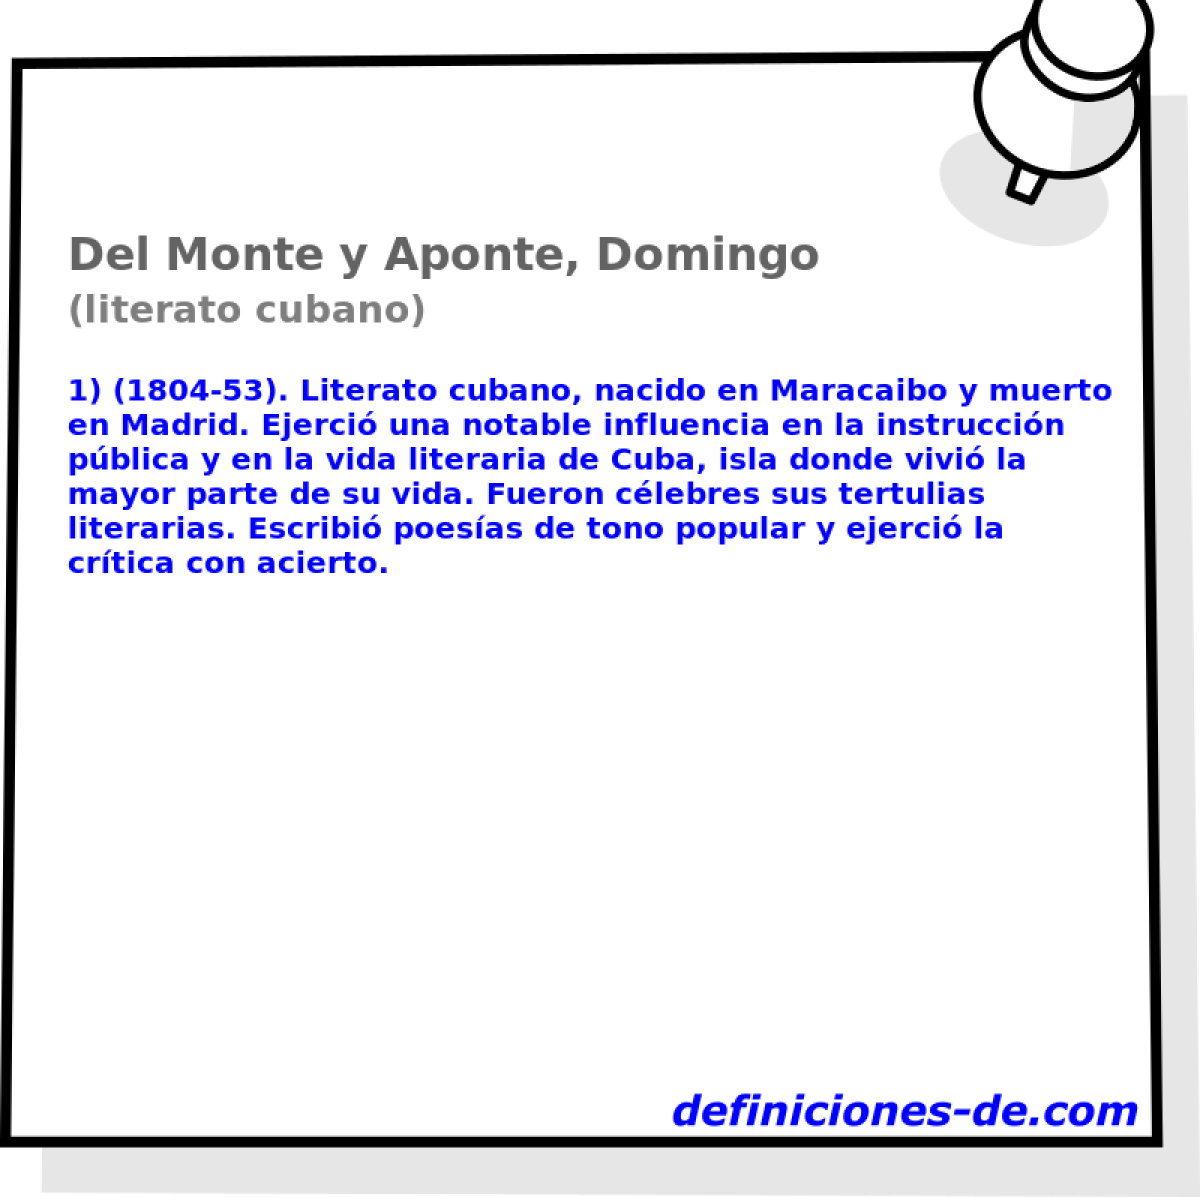 Del Monte y Aponte, Domingo (literato cubano)